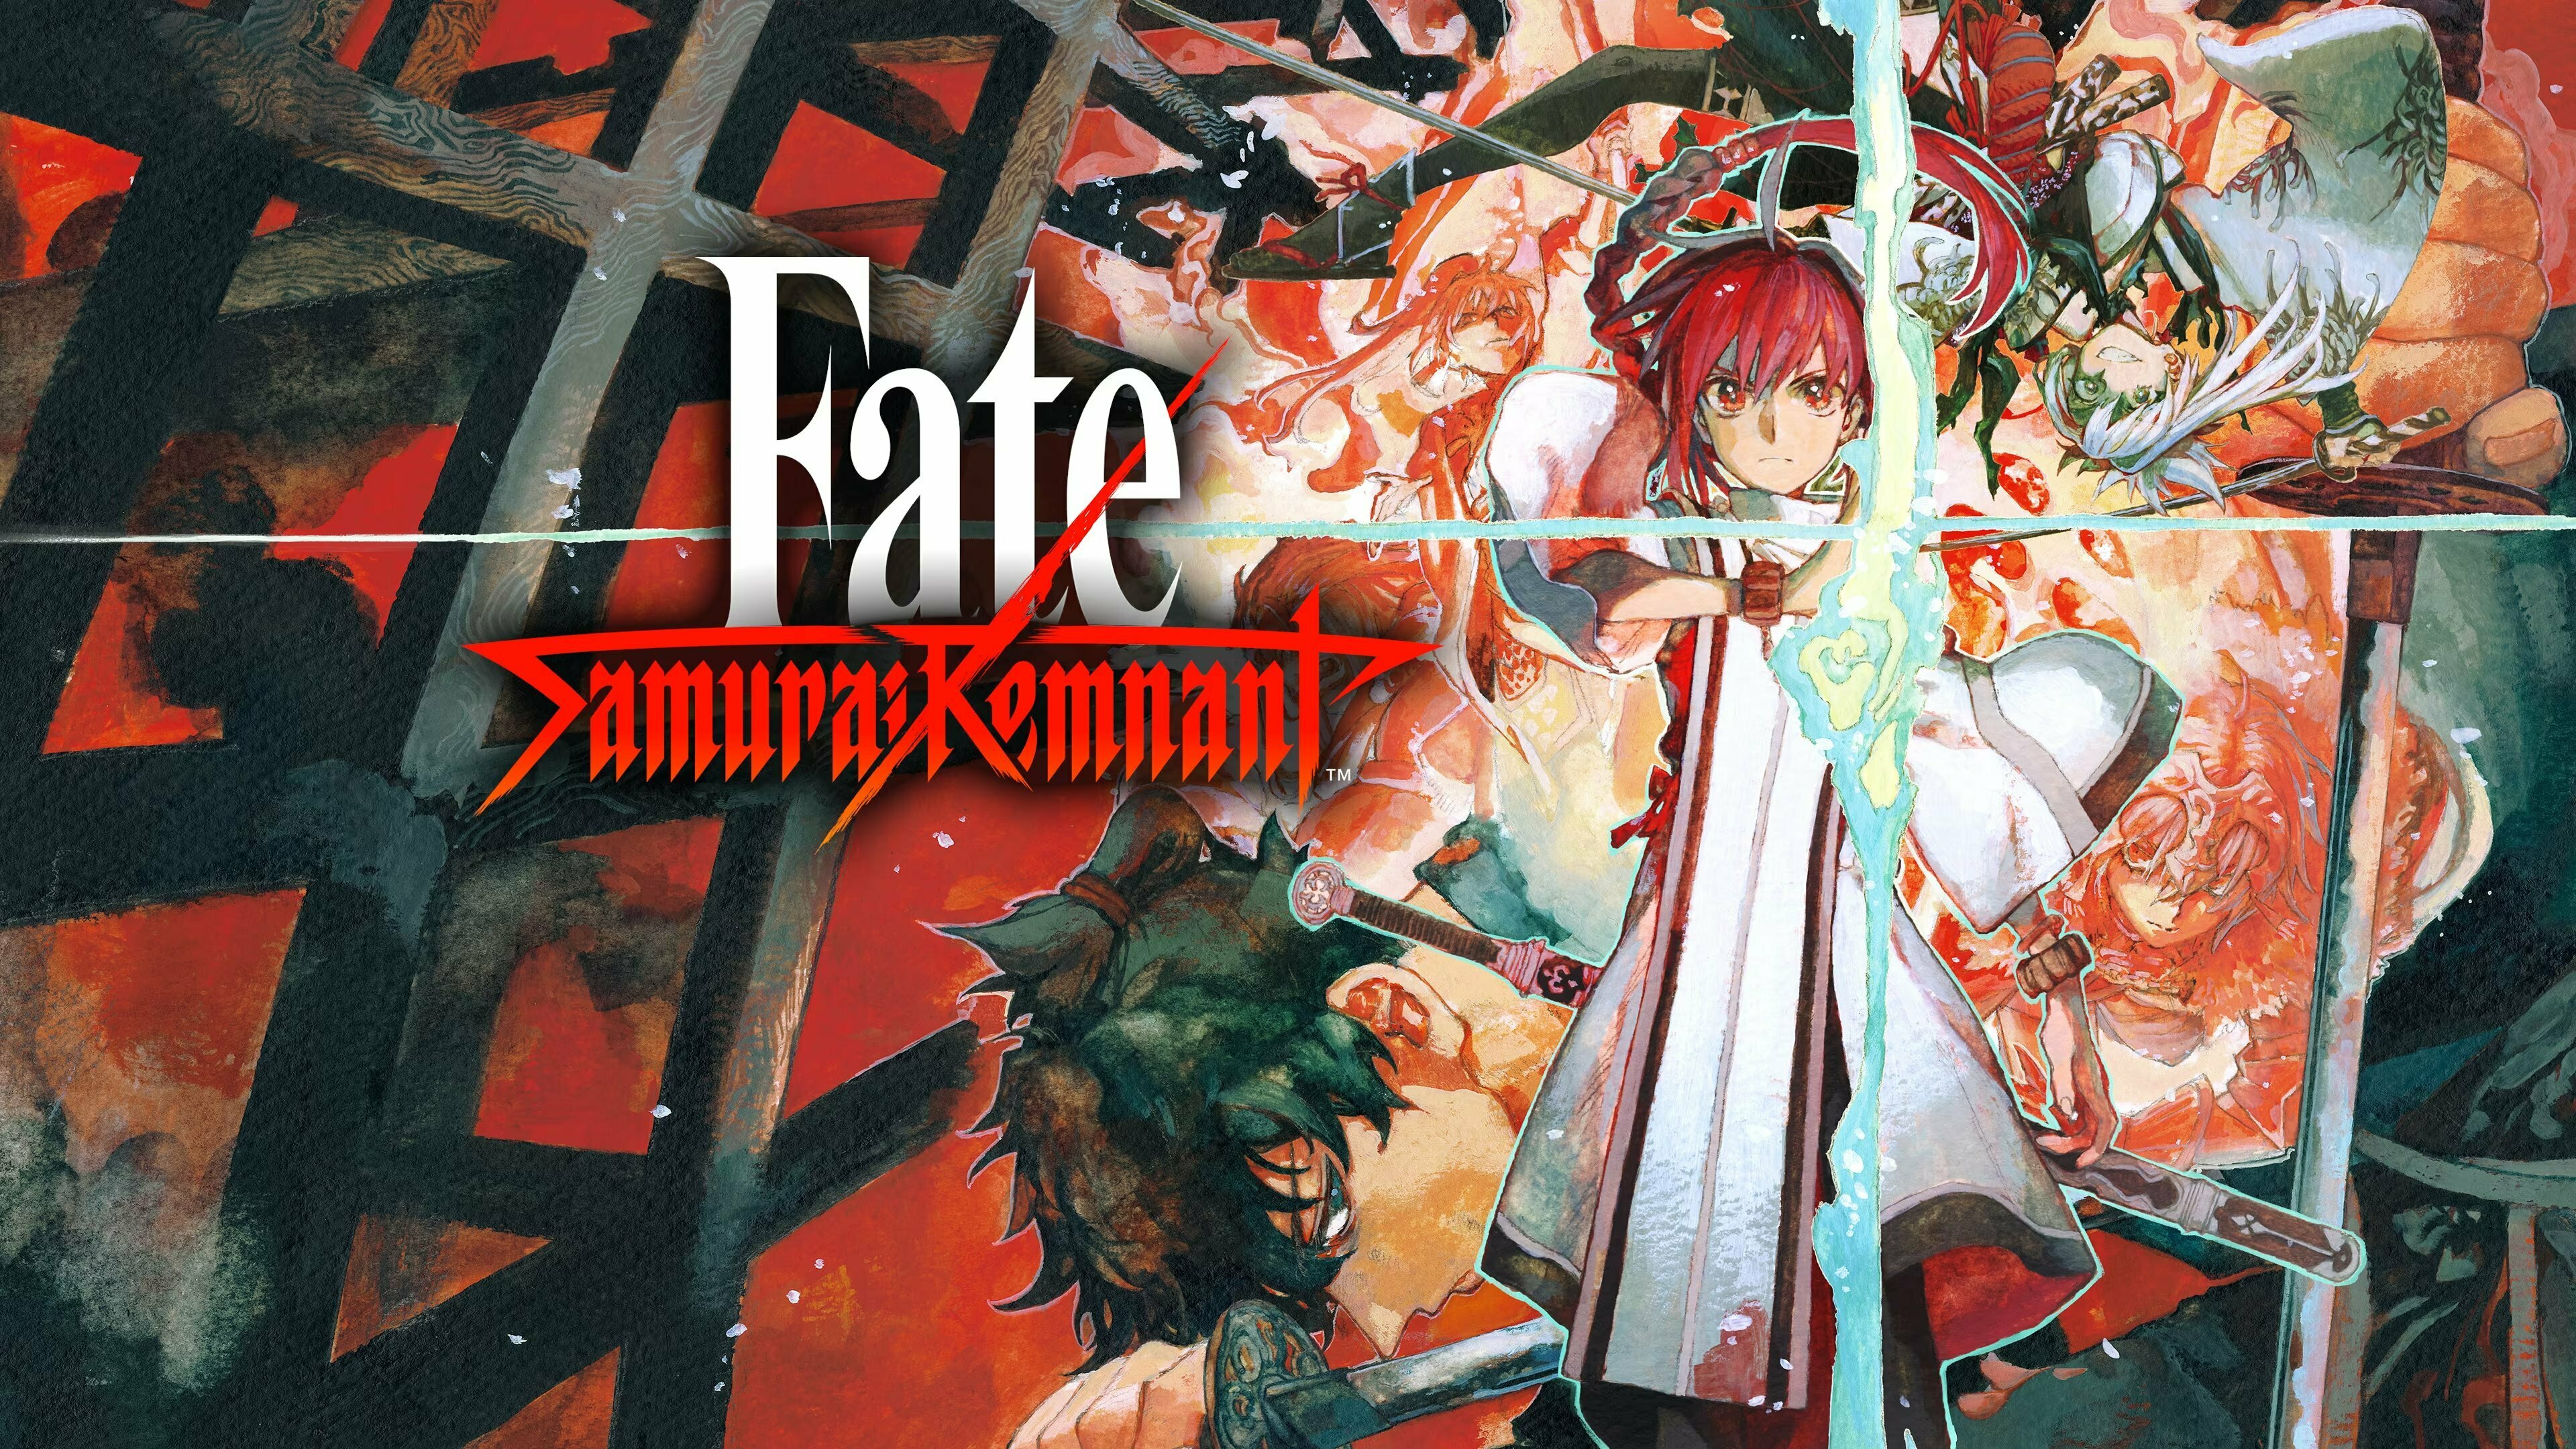 Fate/Samurai Remnant material 未開封 マテリアルサムライレムナント